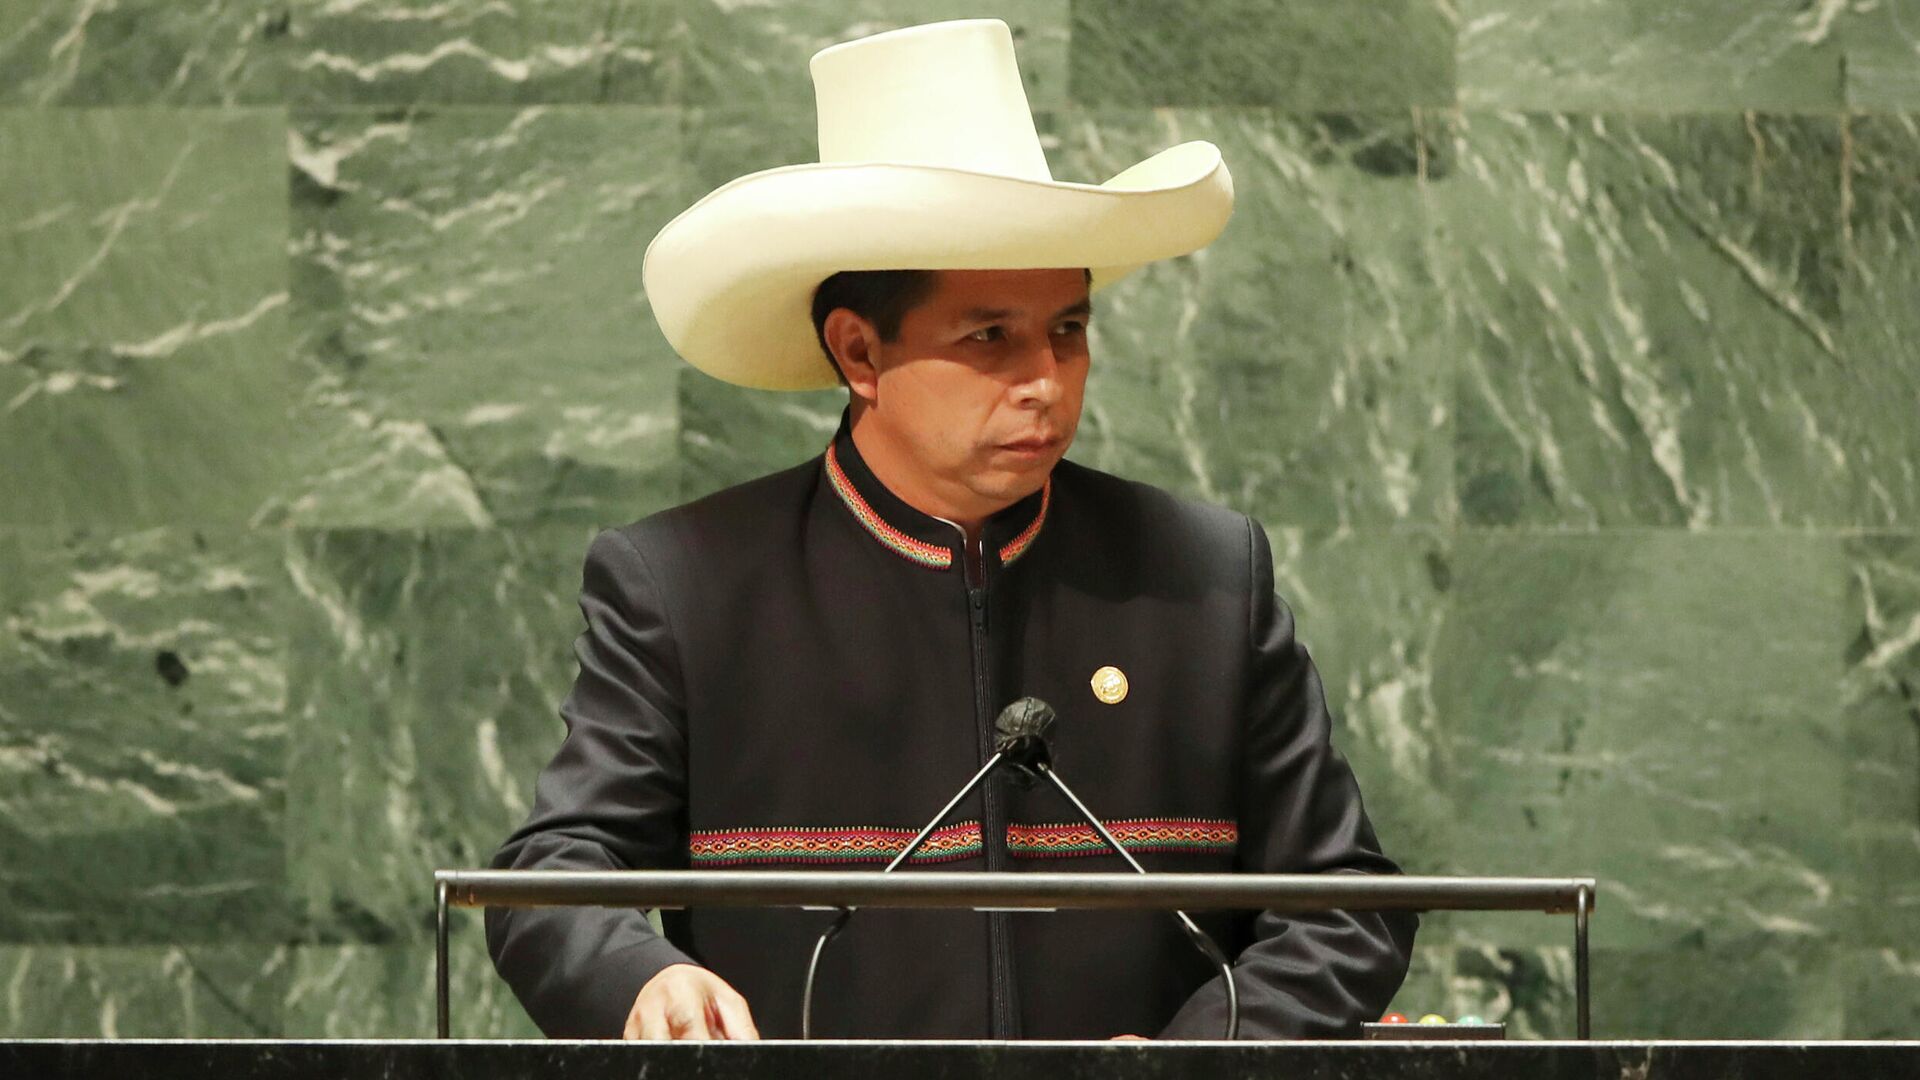 El presidente de Perú, Pedro Castillo, durante la Asamblea General de Naciones Unidas en 2021 - Sputnik Mundo, 1920, 30.11.2021